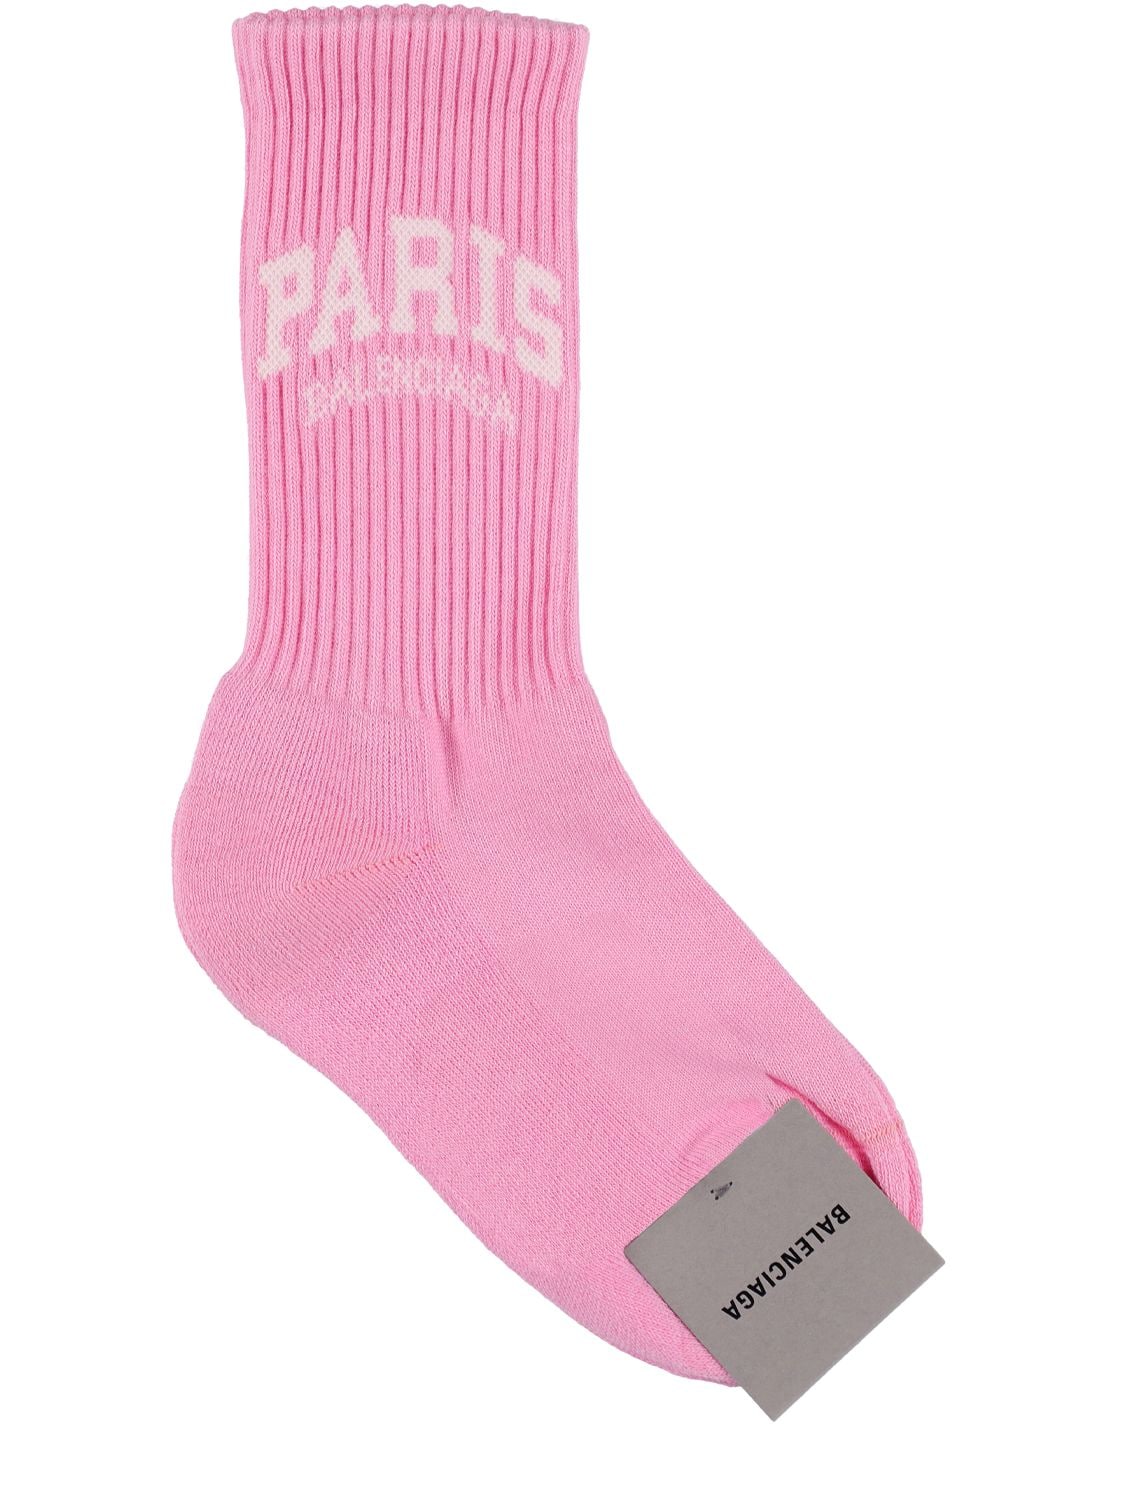 Paris Cotton Blend Socks